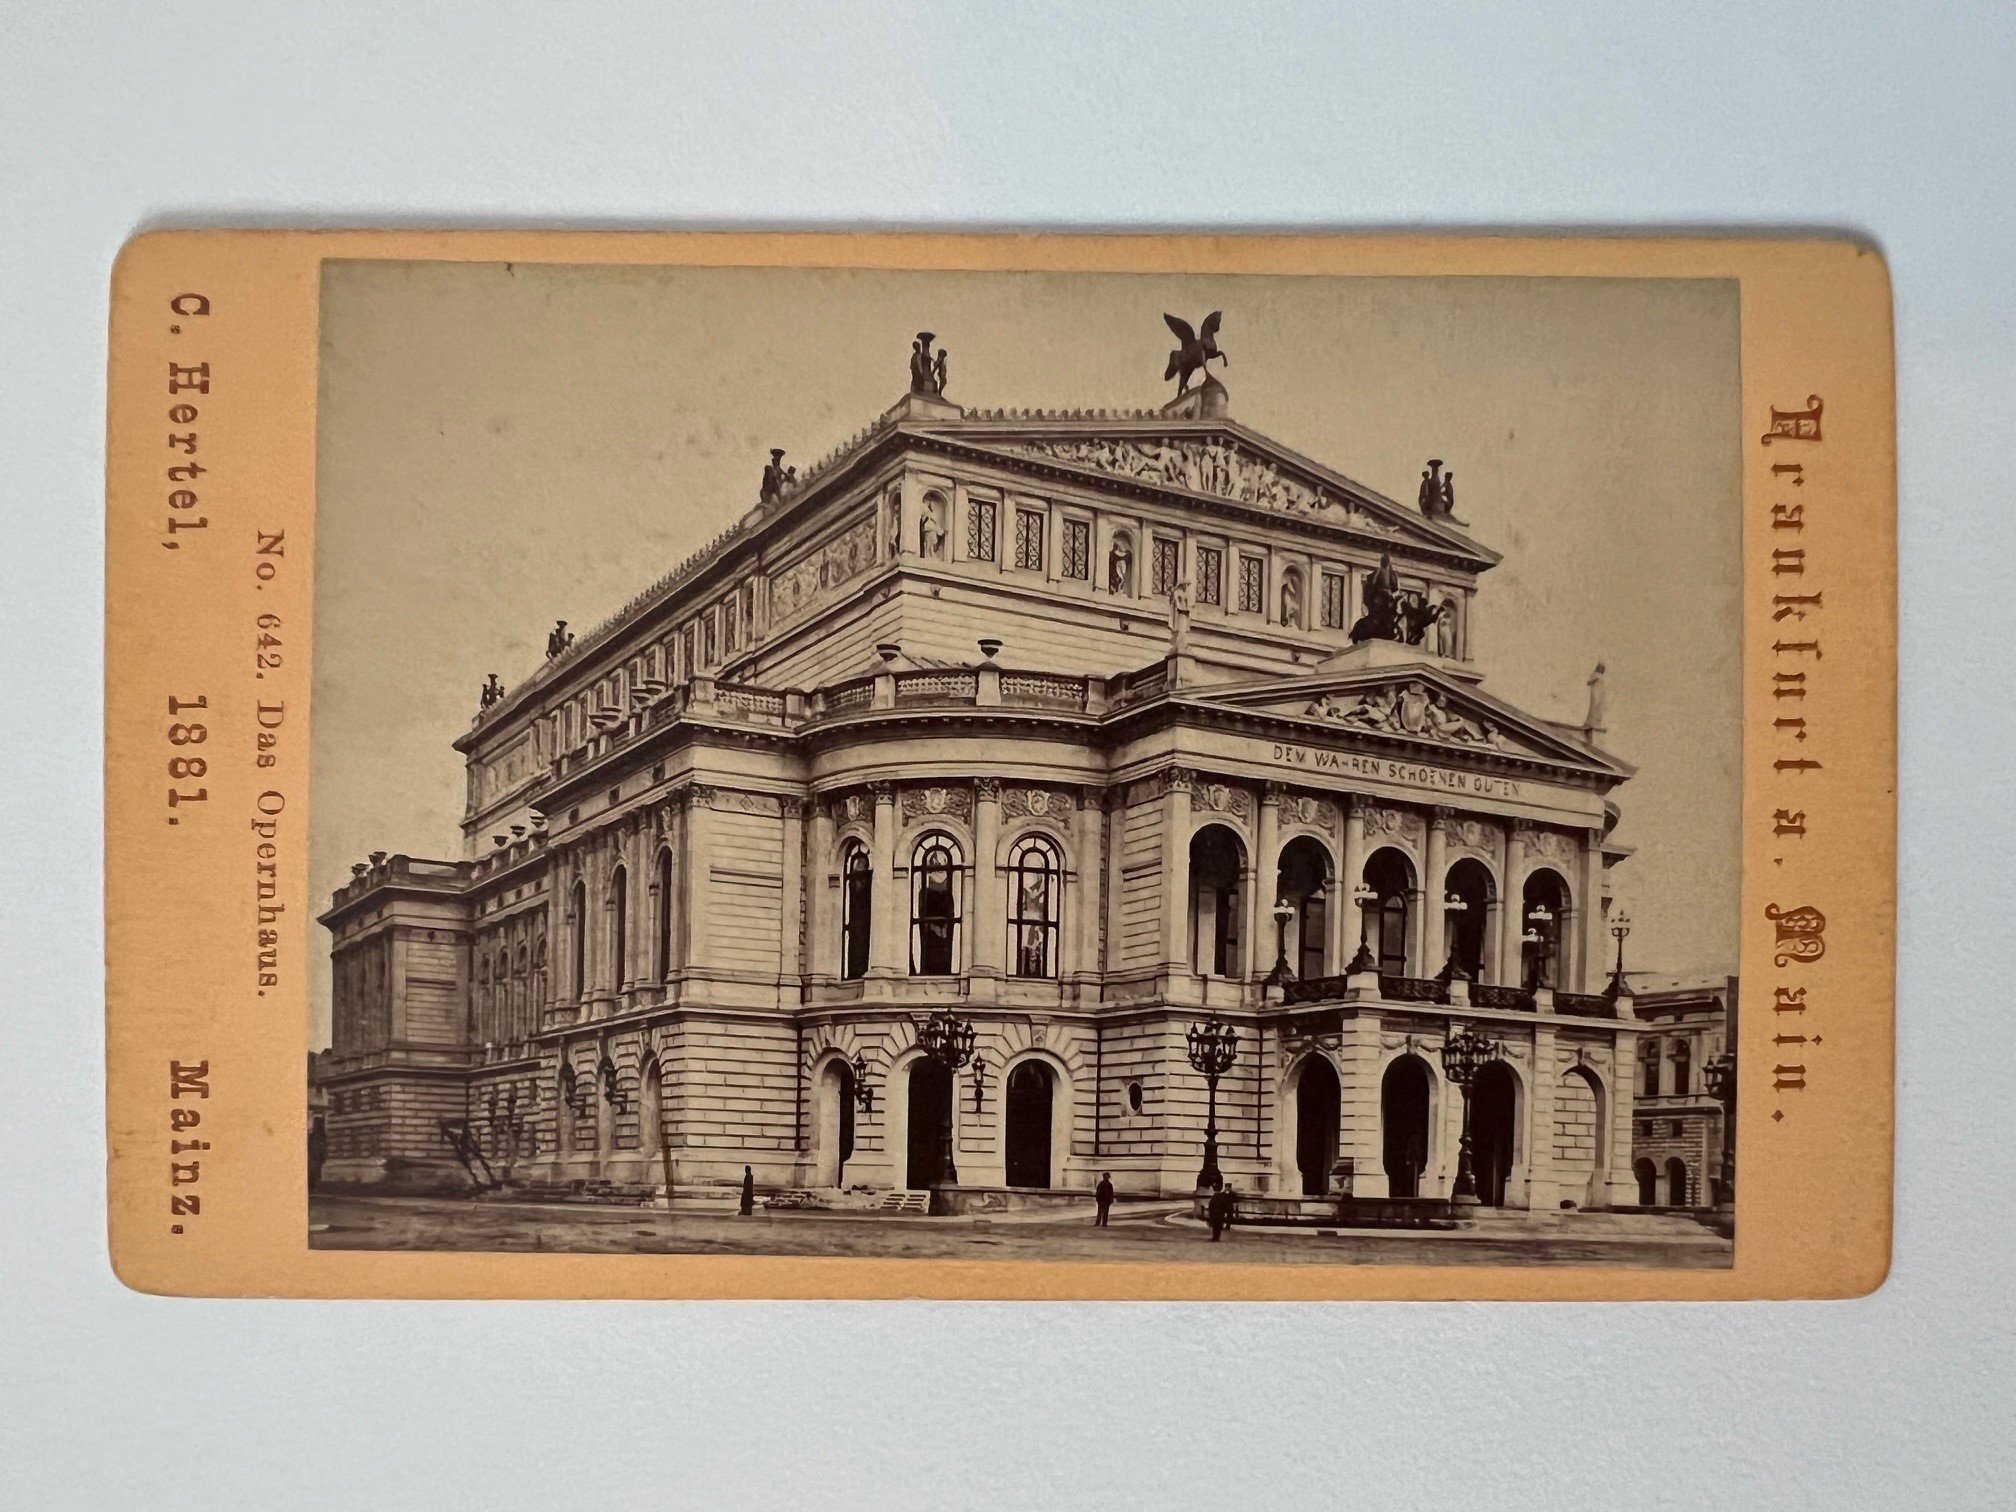 CdV, Carl Hertel, Frankfurt, Das Opernhaus, 1881. (Taunus-Rhein-Main - Regionalgeschichtliche Sammlung Dr. Stefan Naas CC BY-NC-SA)